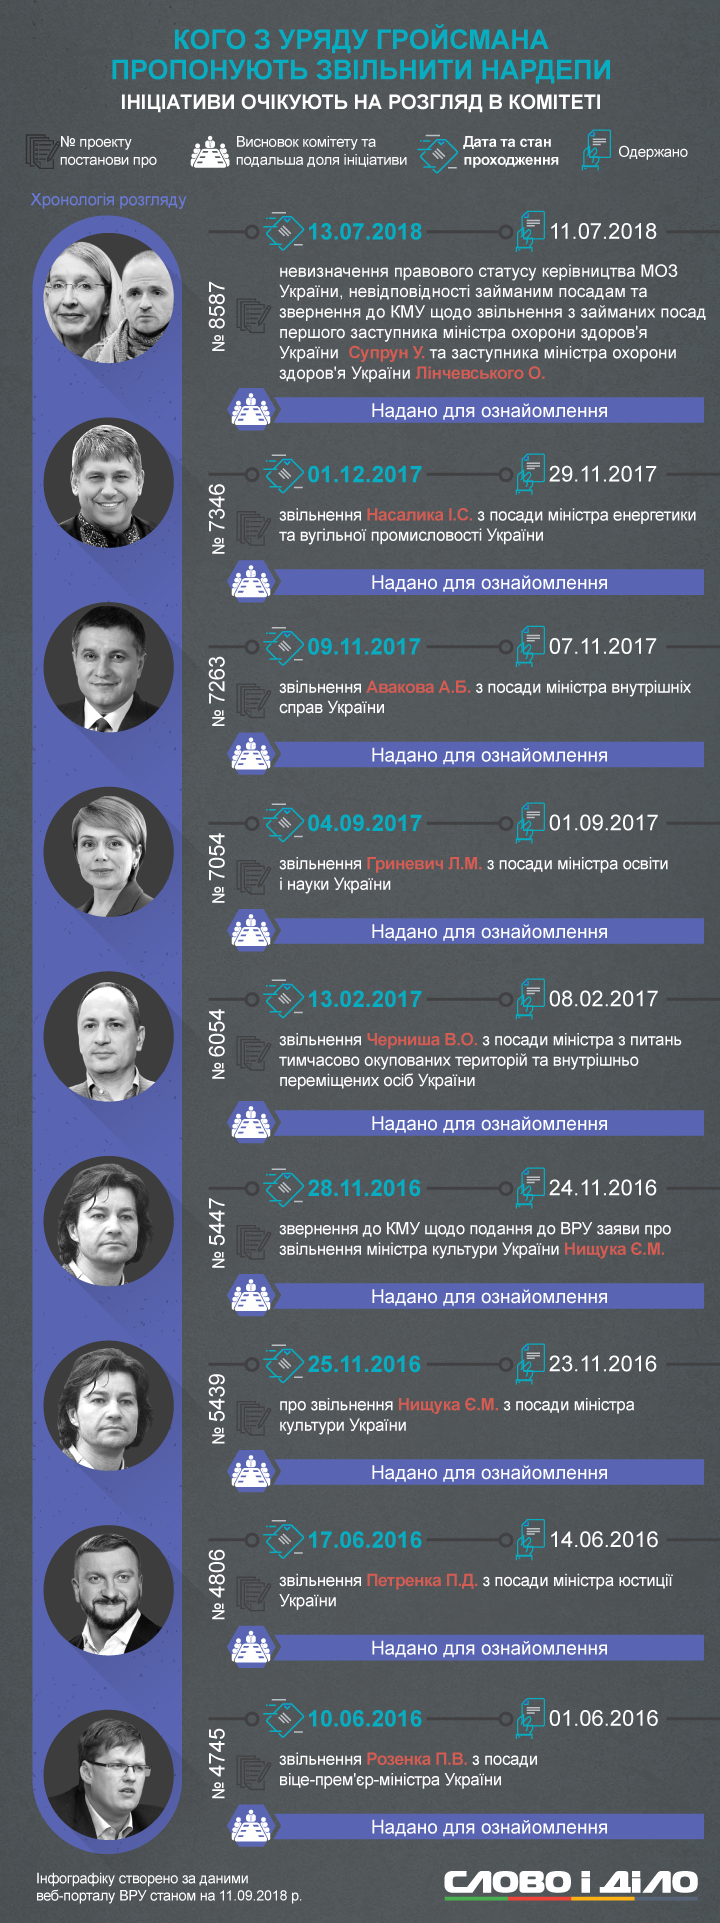 Чаще всего нардепы пытались уволить Авакова, Супрун, Реву и Петренко. Активнее всех по отстранению от должностей министров выступает депутат Каплин.